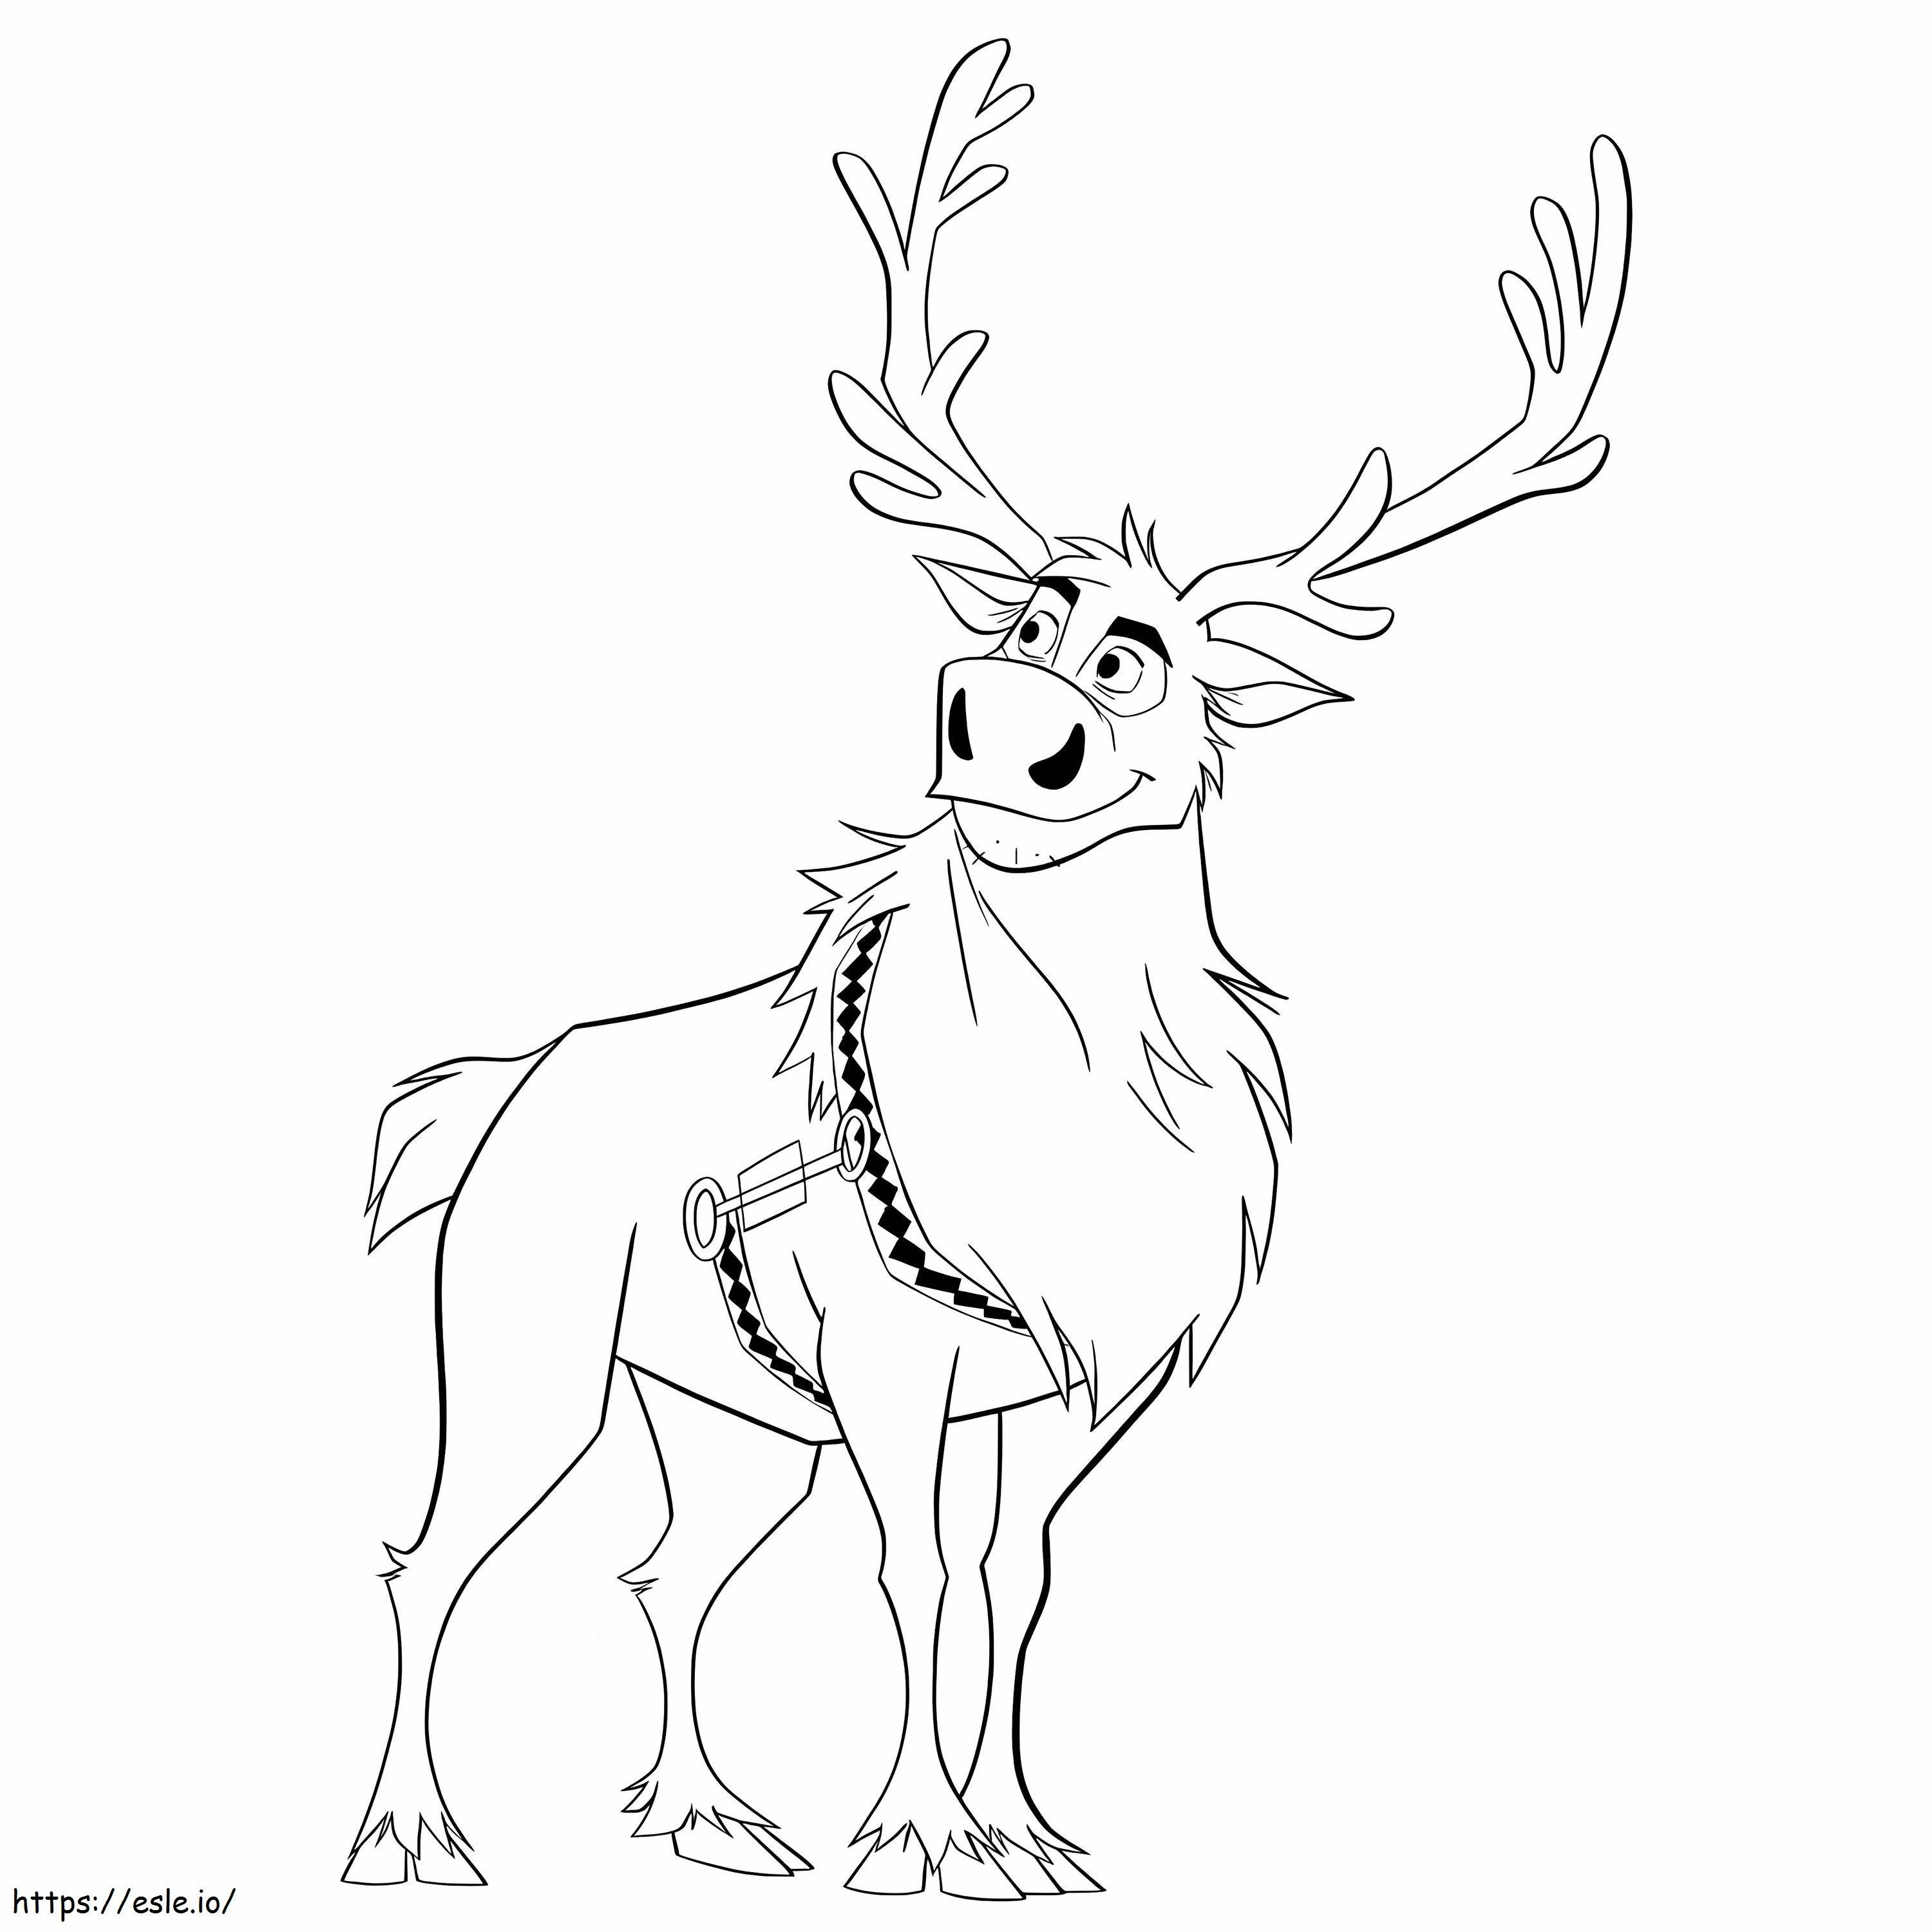 Cartoon Reindeer coloring page